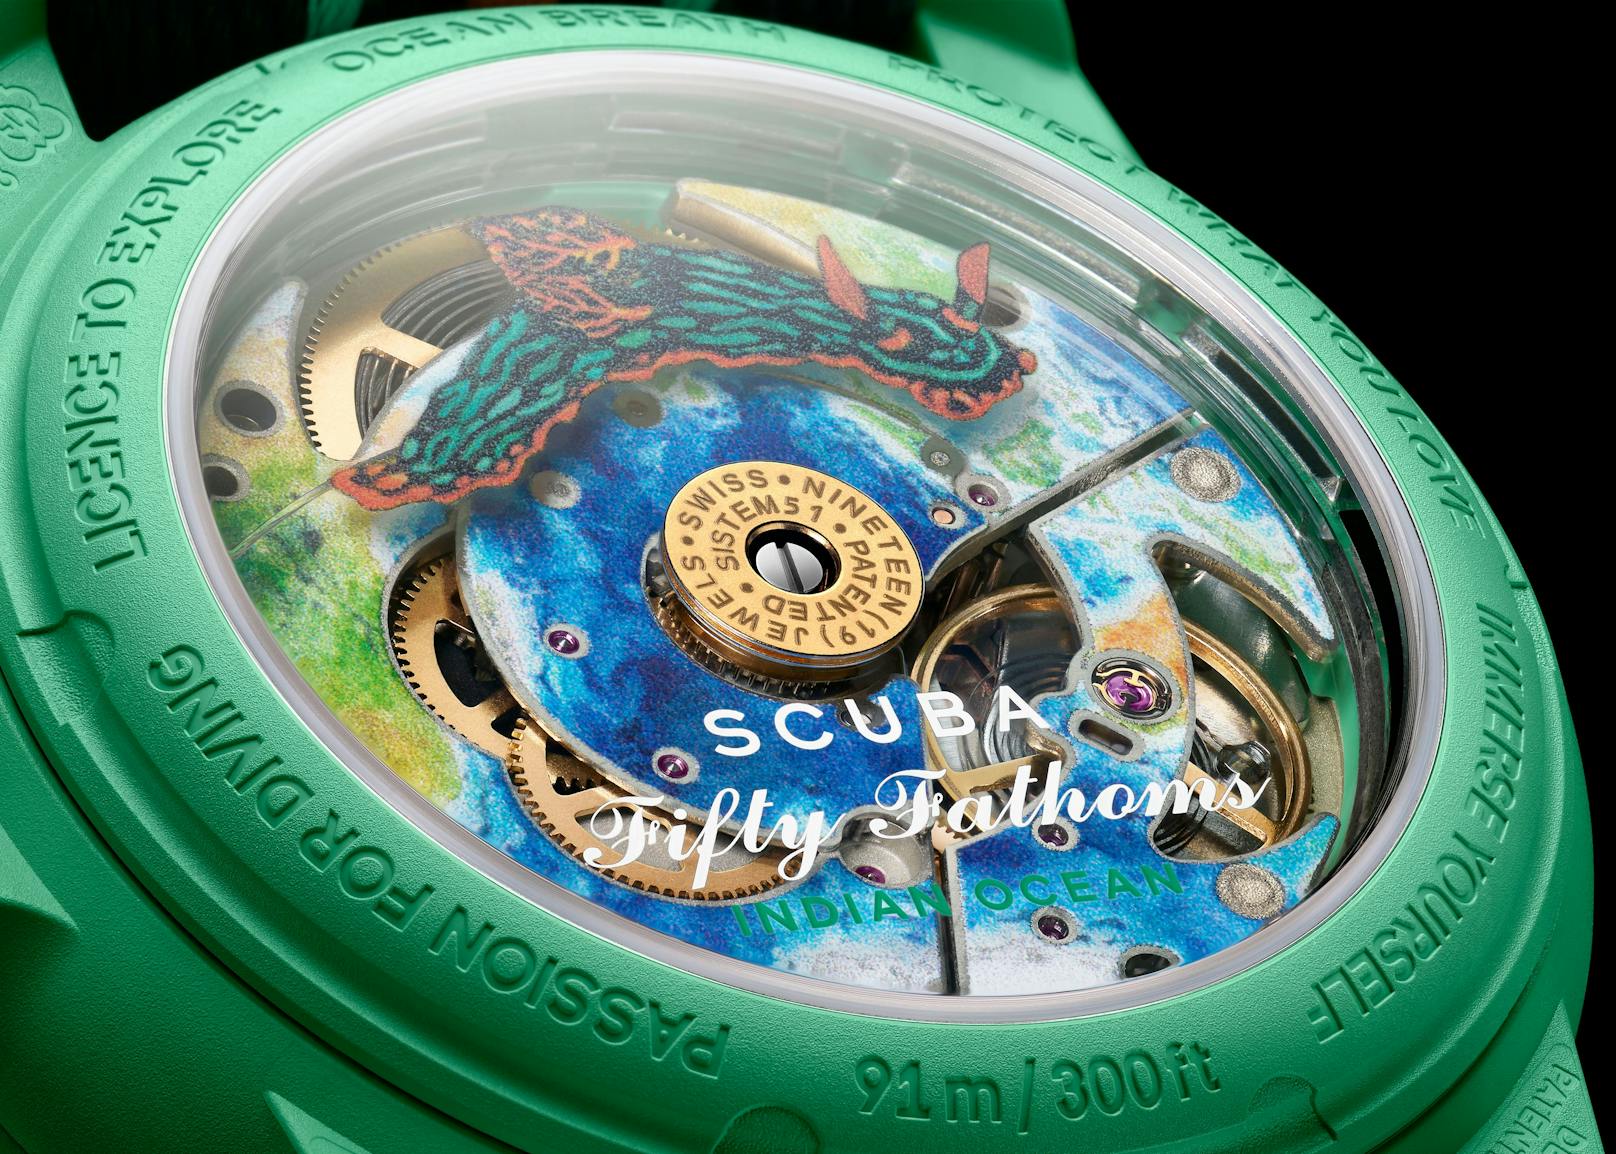 Swatch kopiert noble Blancpain-Uhr